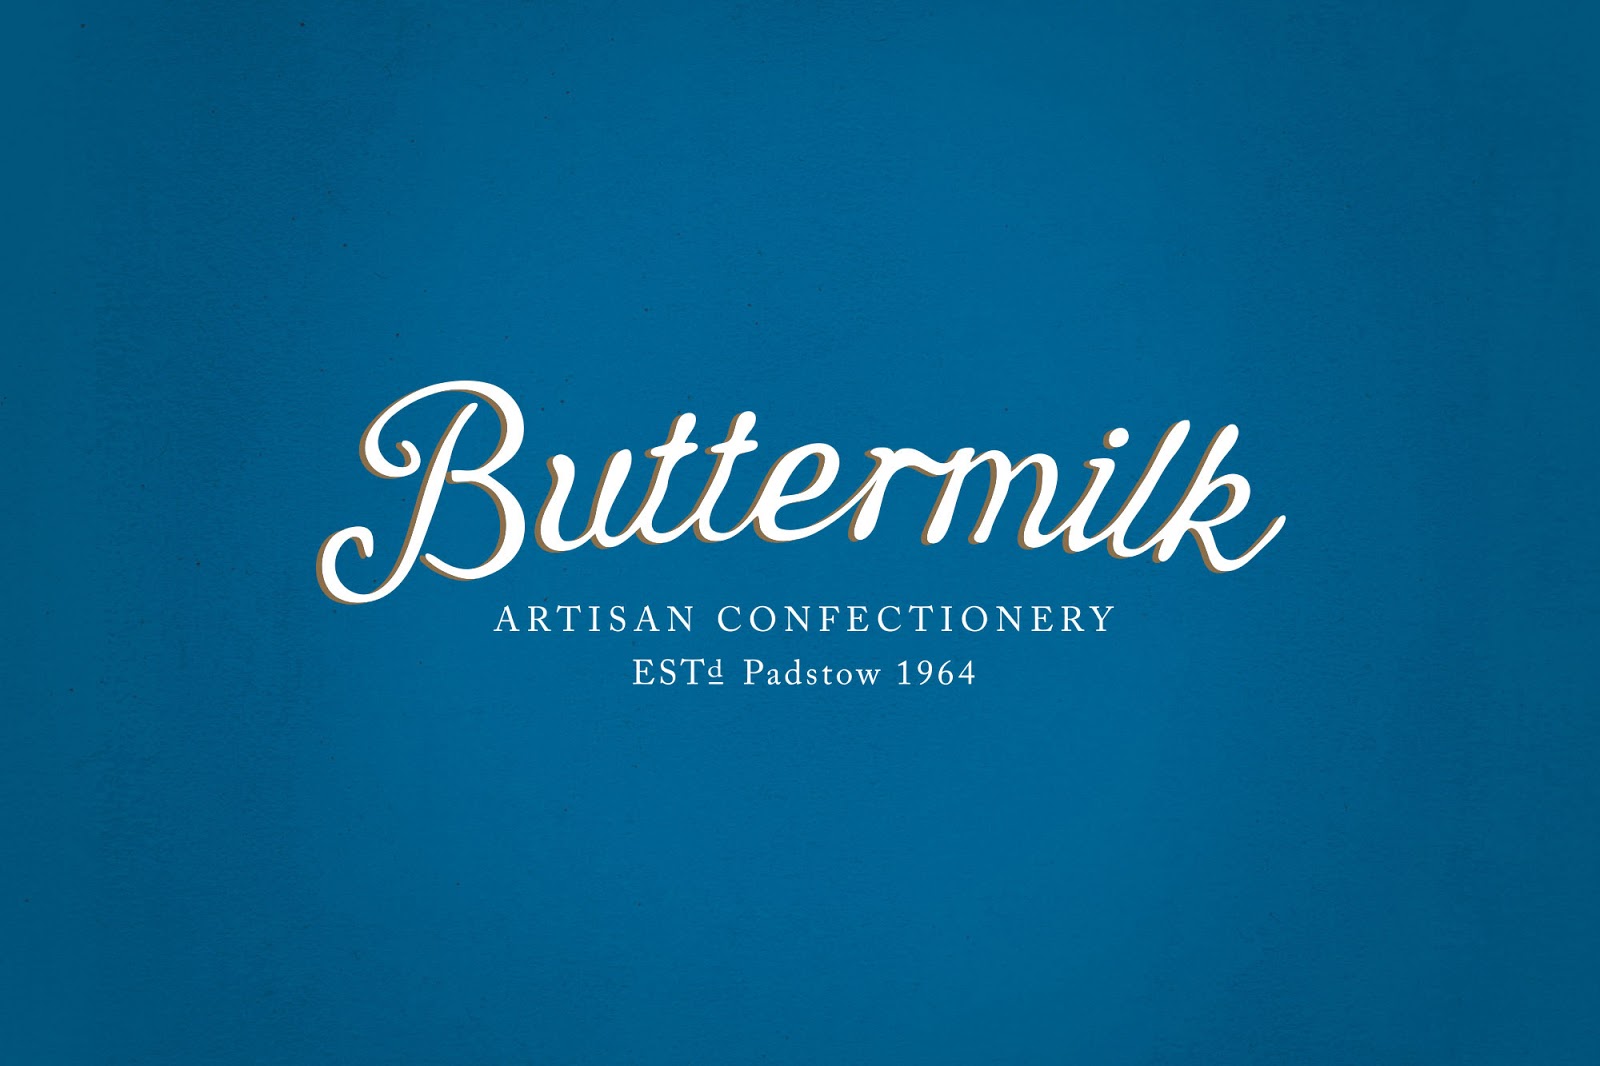 rgb.vn_buttermilk-packaging_01